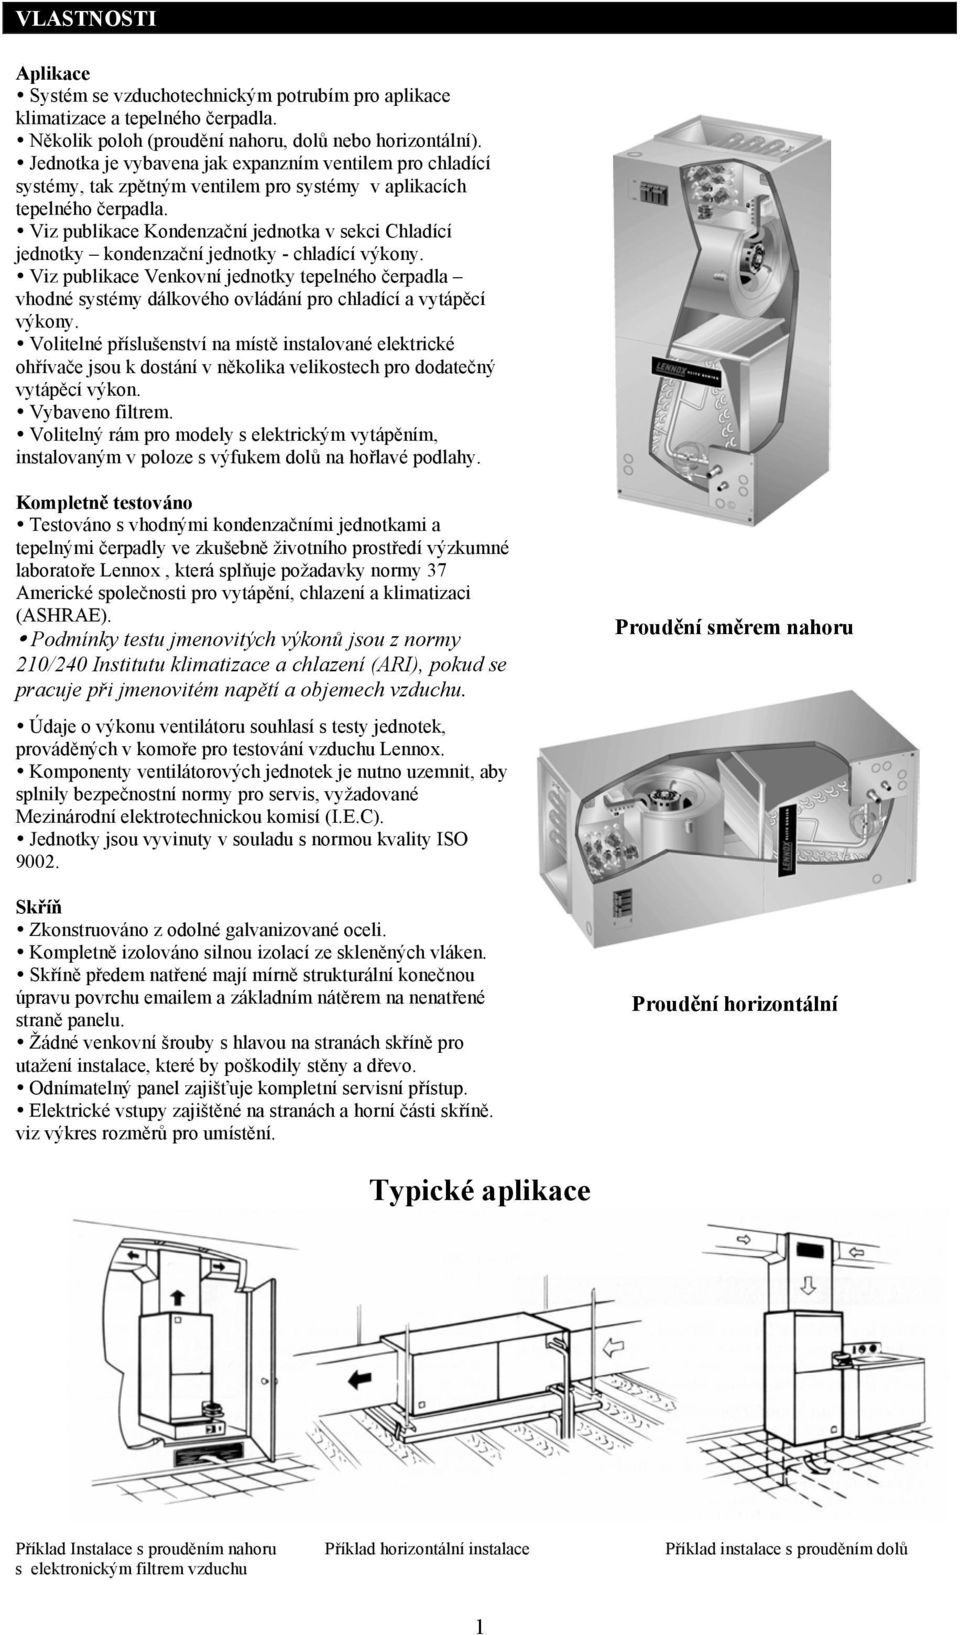 Viz publikace Kondenzační jednotka v sekci Chladící jednotky kondenzační jednotky - chladící výkony.